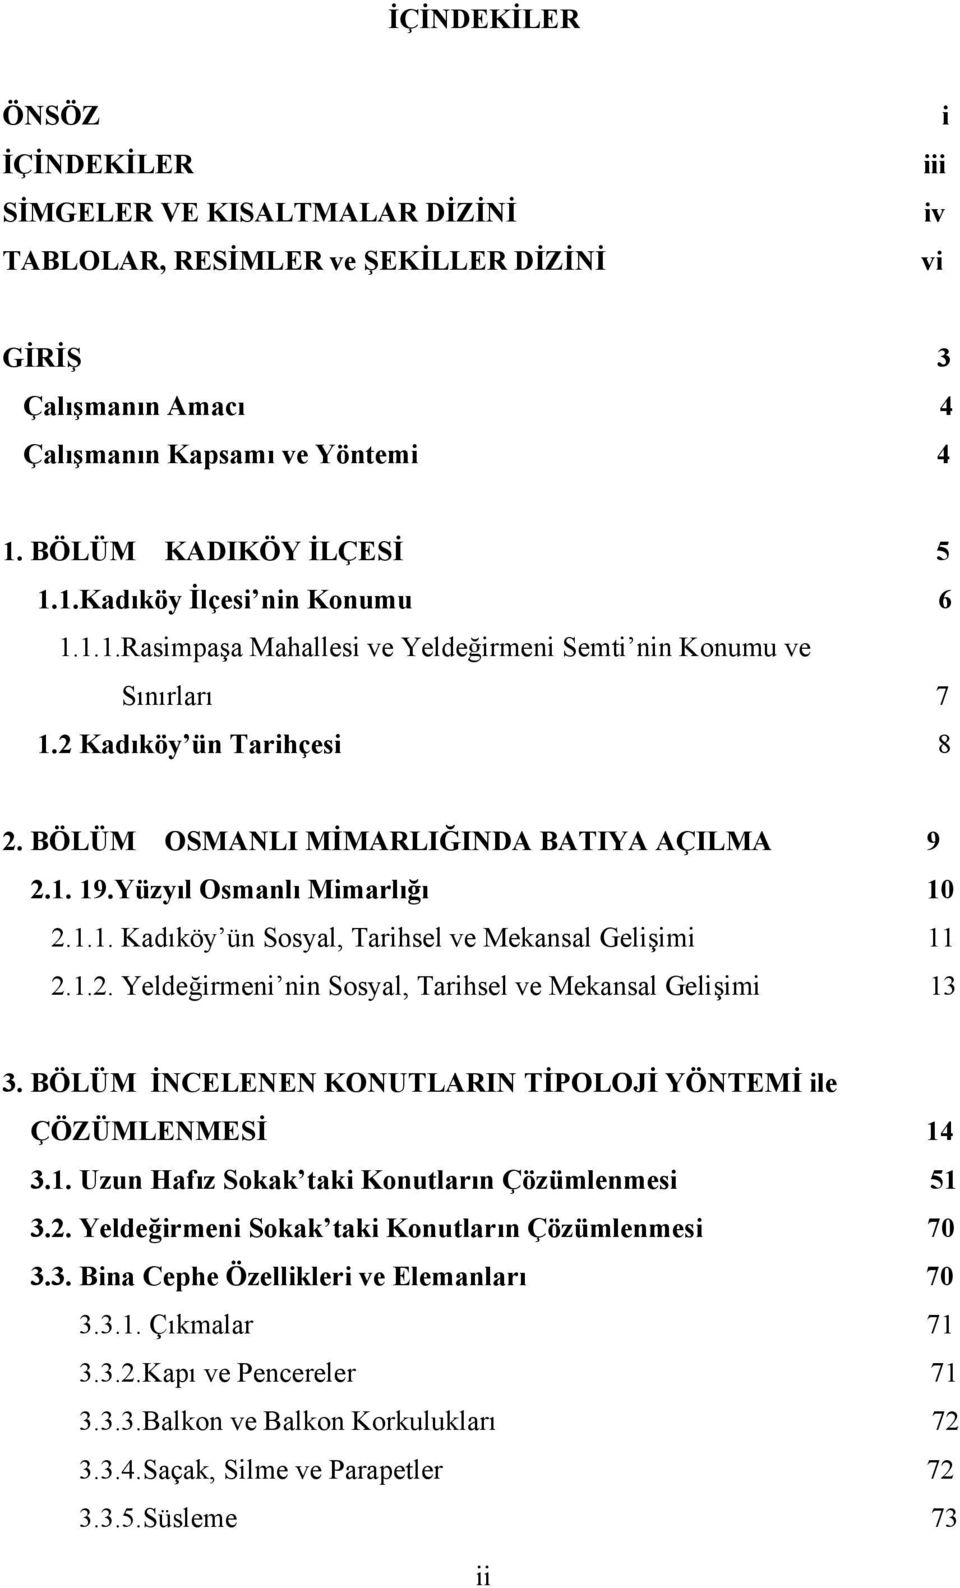 BÖLÜM OSMANLI MİMARLIĞINDA BATIYA AÇILMA 9 2.1. 19.Yüzyıl Osmanlı Mimarlığı 10 2.1.1. Kadıköy ün Sosyal, Tarihsel ve Mekansal Gelişimi 11 2.1.2. Yeldeğirmeni nin Sosyal, Tarihsel ve Mekansal Gelişimi 13 3.